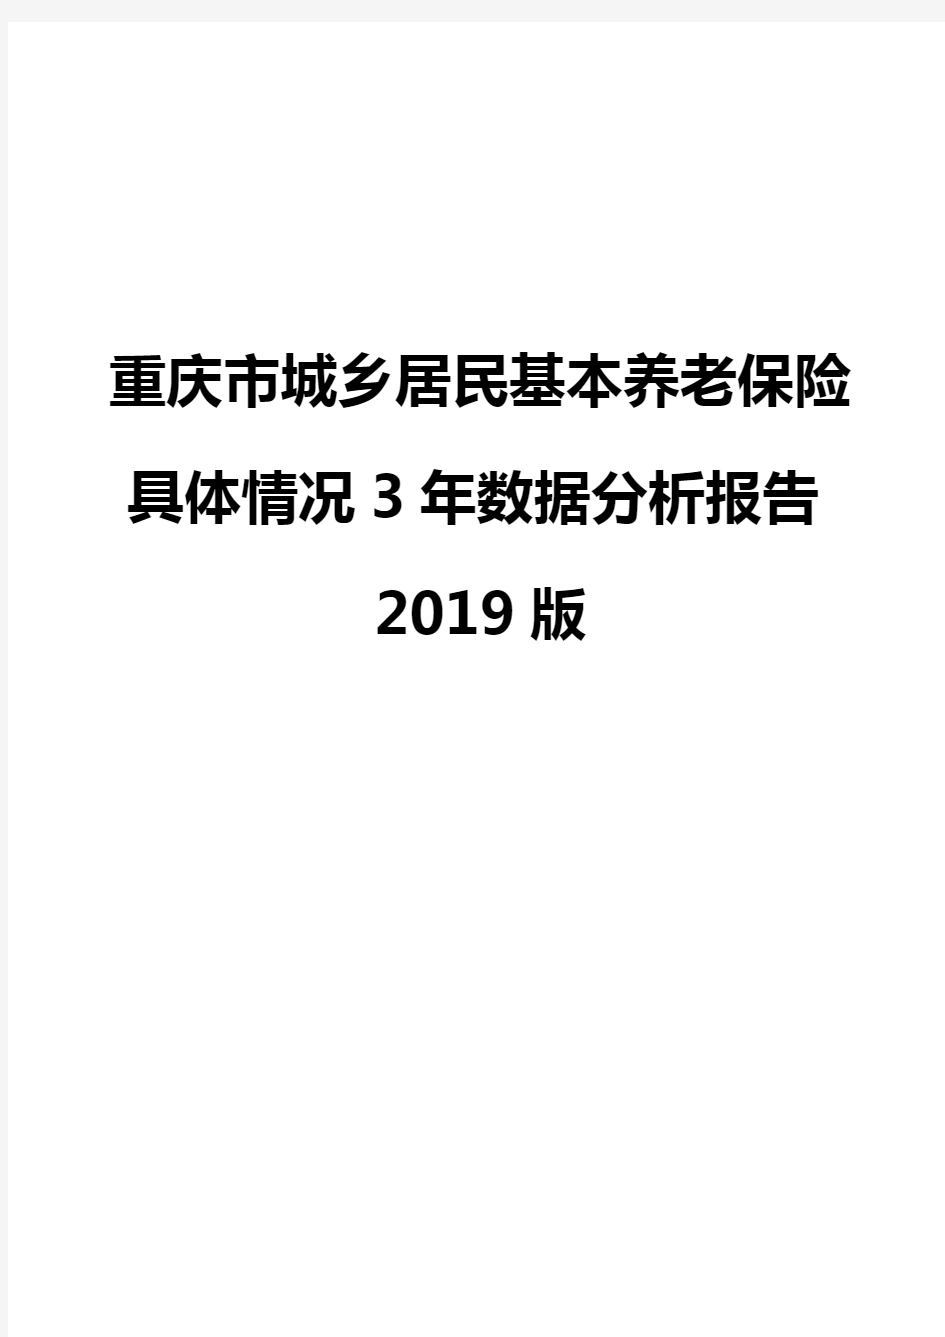 重庆市城乡居民基本养老保险具体情况3年数据分析报告2019版